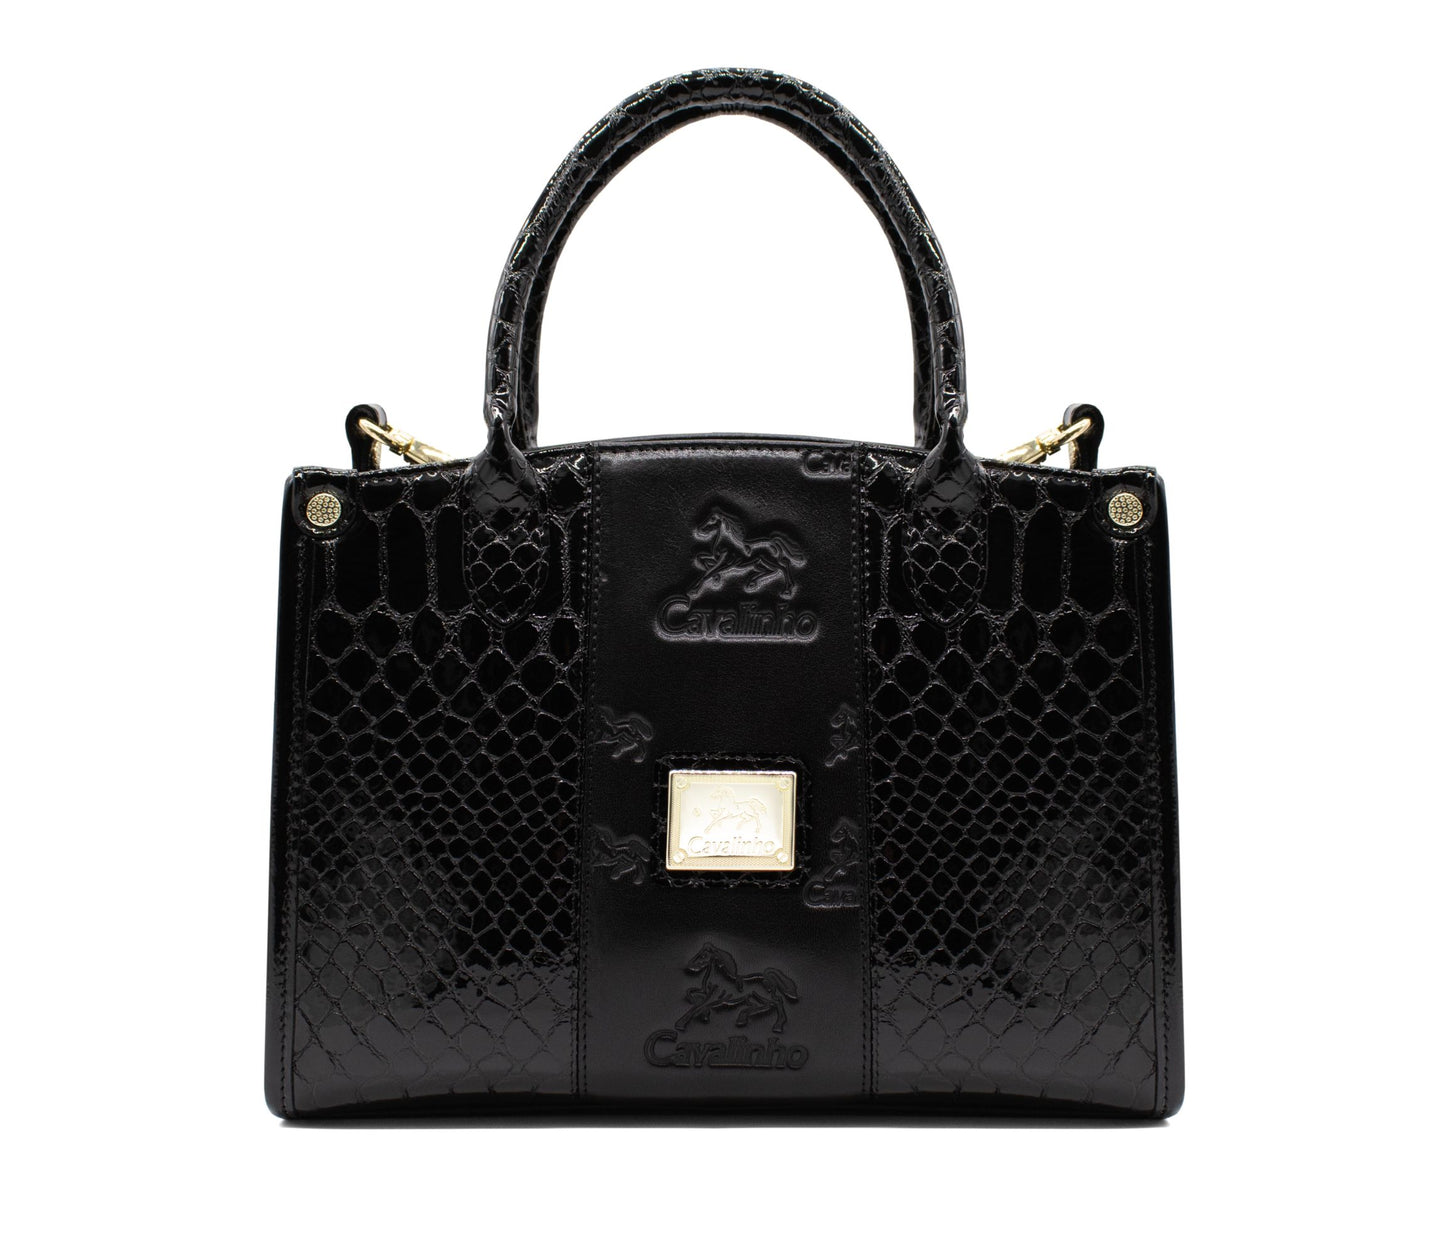 #color_ Black | Cavalinho Honor Handbag - Black - 18190480.01_1